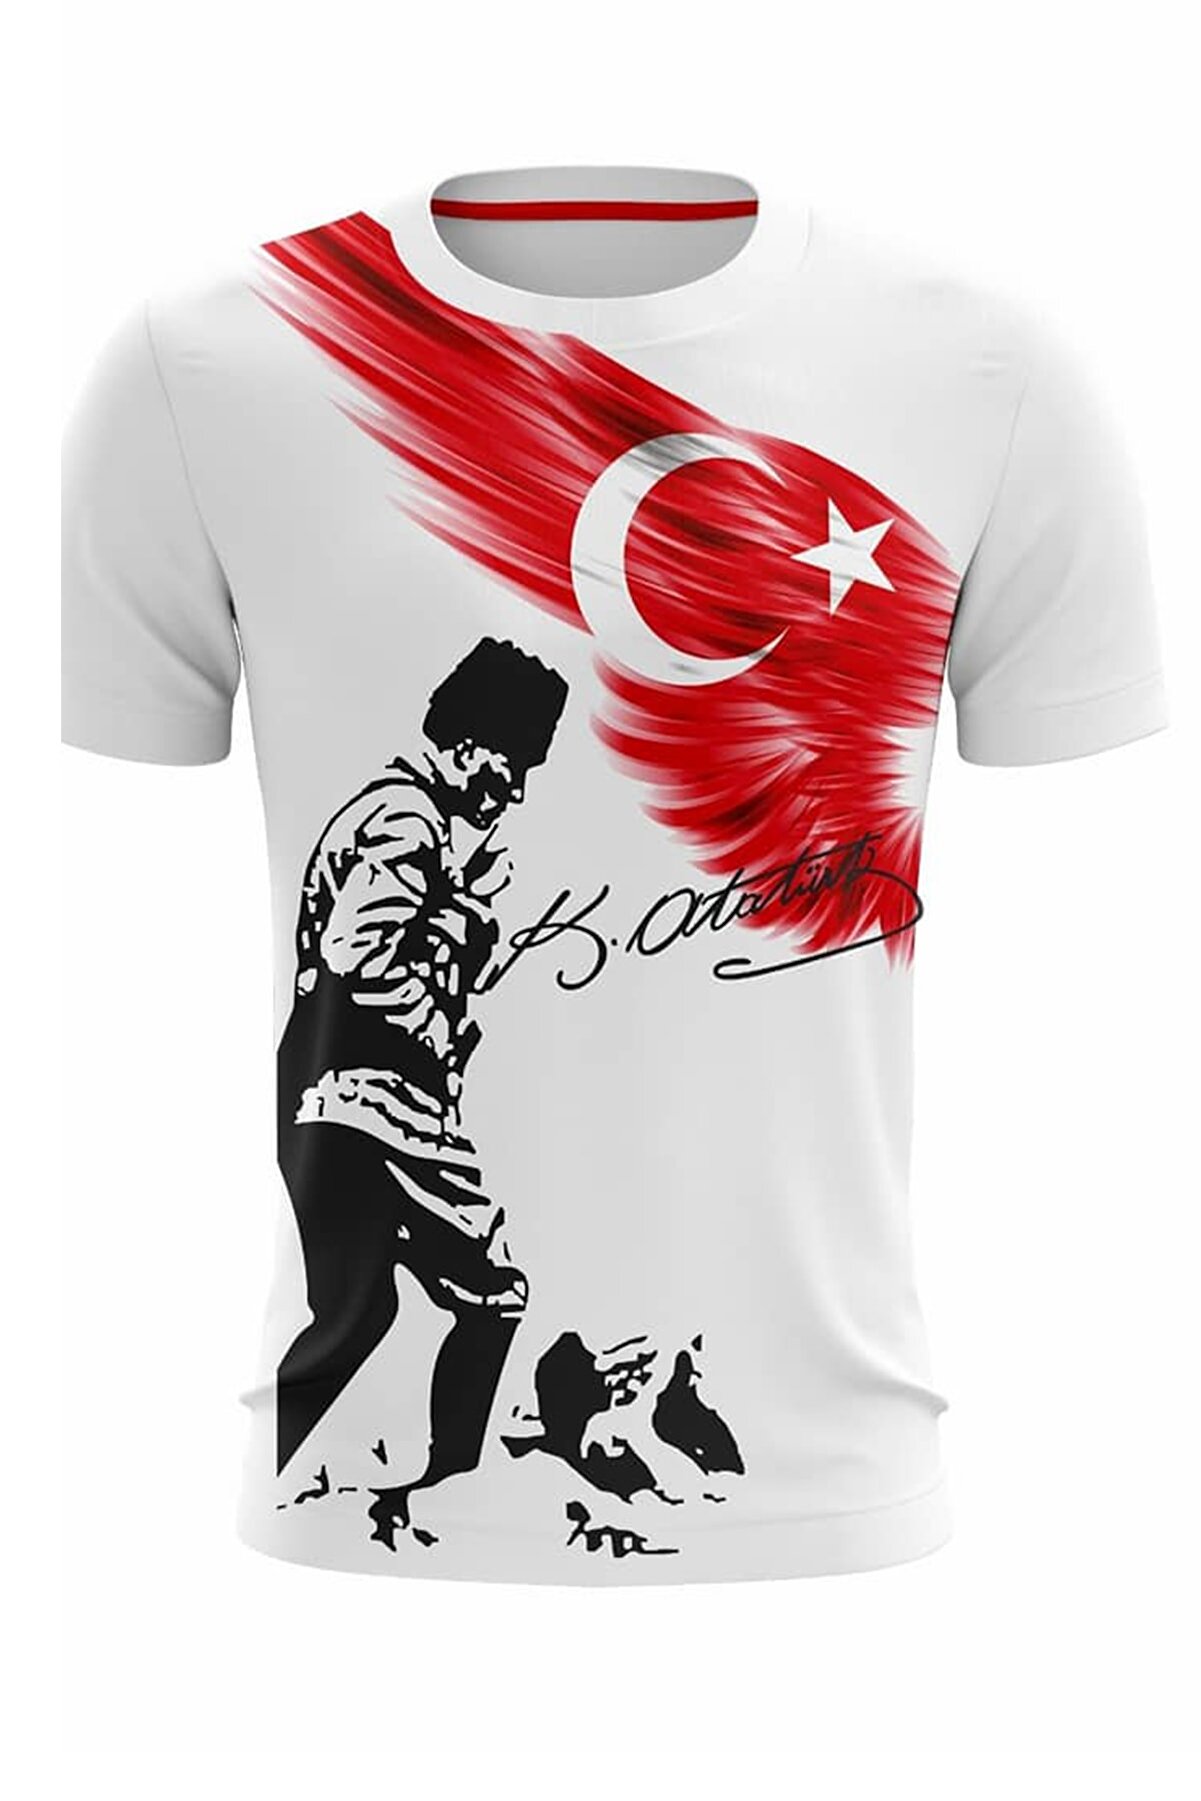 Hediyexpres Unısex 23 Nisan 29 Ekim 10 Kasım 19 Mayıs Gösteri Kostüm Atatürk Türk Bayrağı Baskılı T-shirt